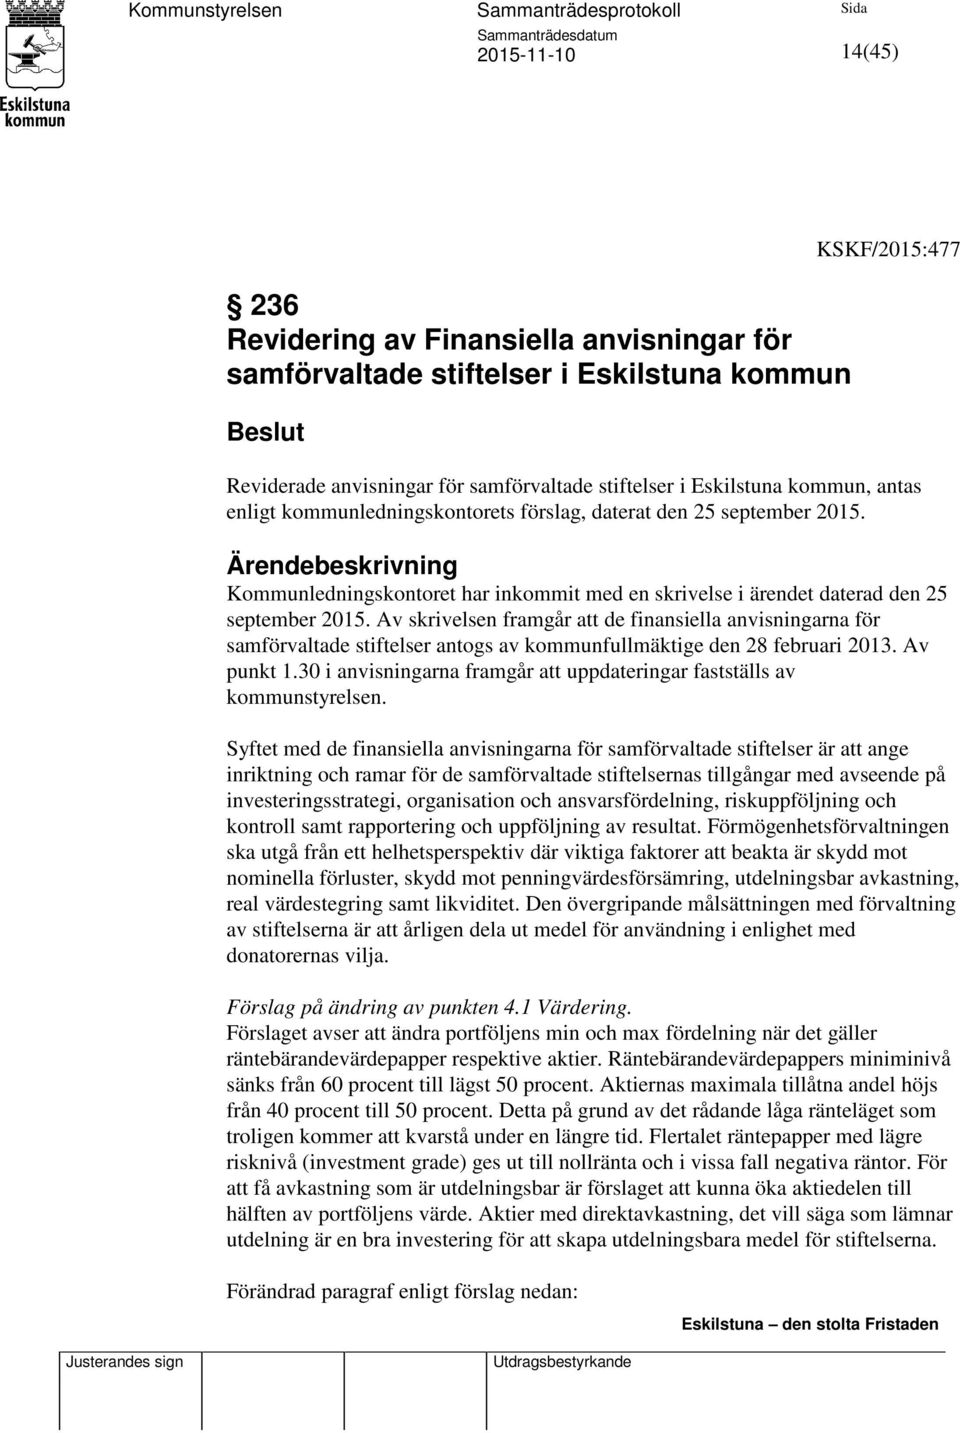 Av skrivelsen framgår att de finansiella anvisningarna för samförvaltade stiftelser antogs av kommunfullmäktige den 28 februari 2013. Av punkt 1.